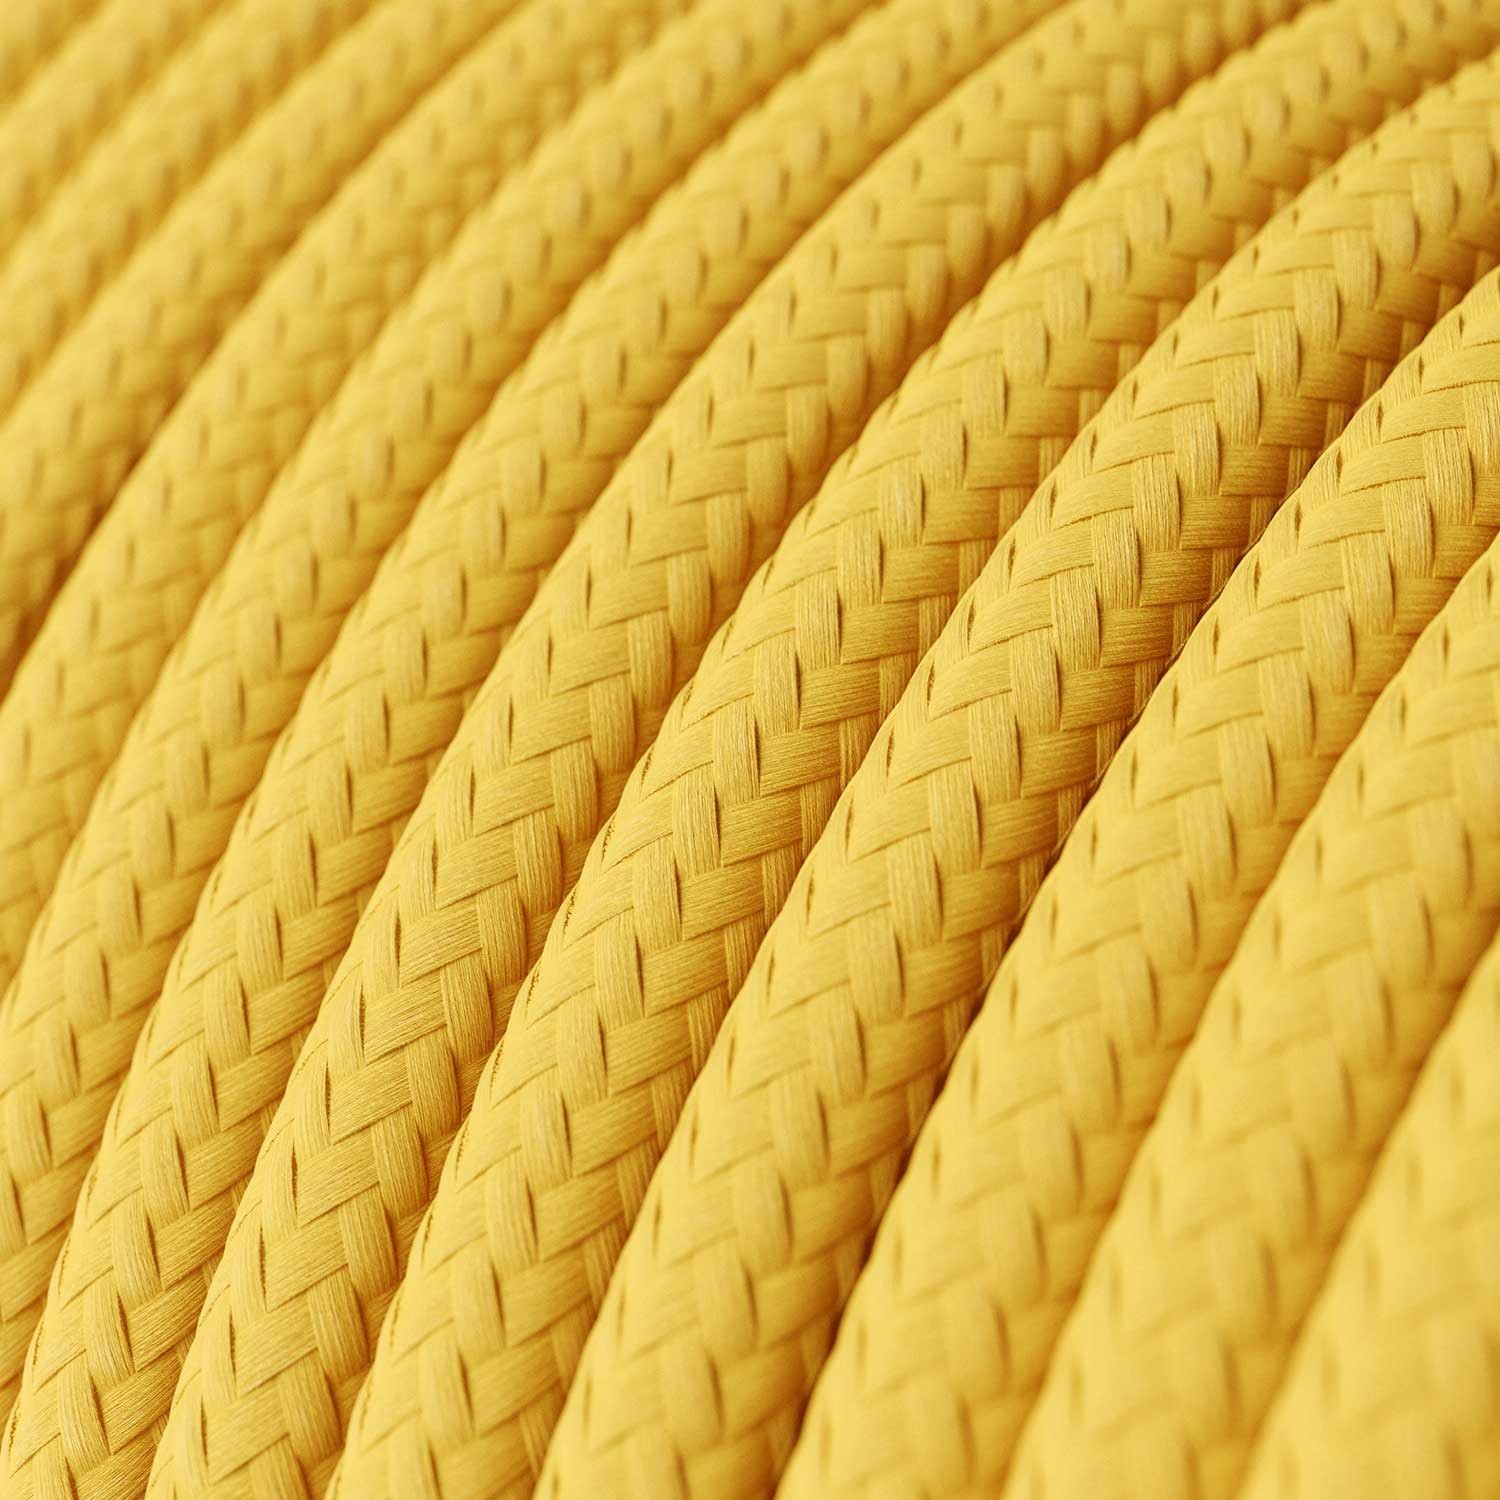 Elektrisches Kabel rund überzogen mit Textil-Seideneffekt Einfarbig Gelb RM10